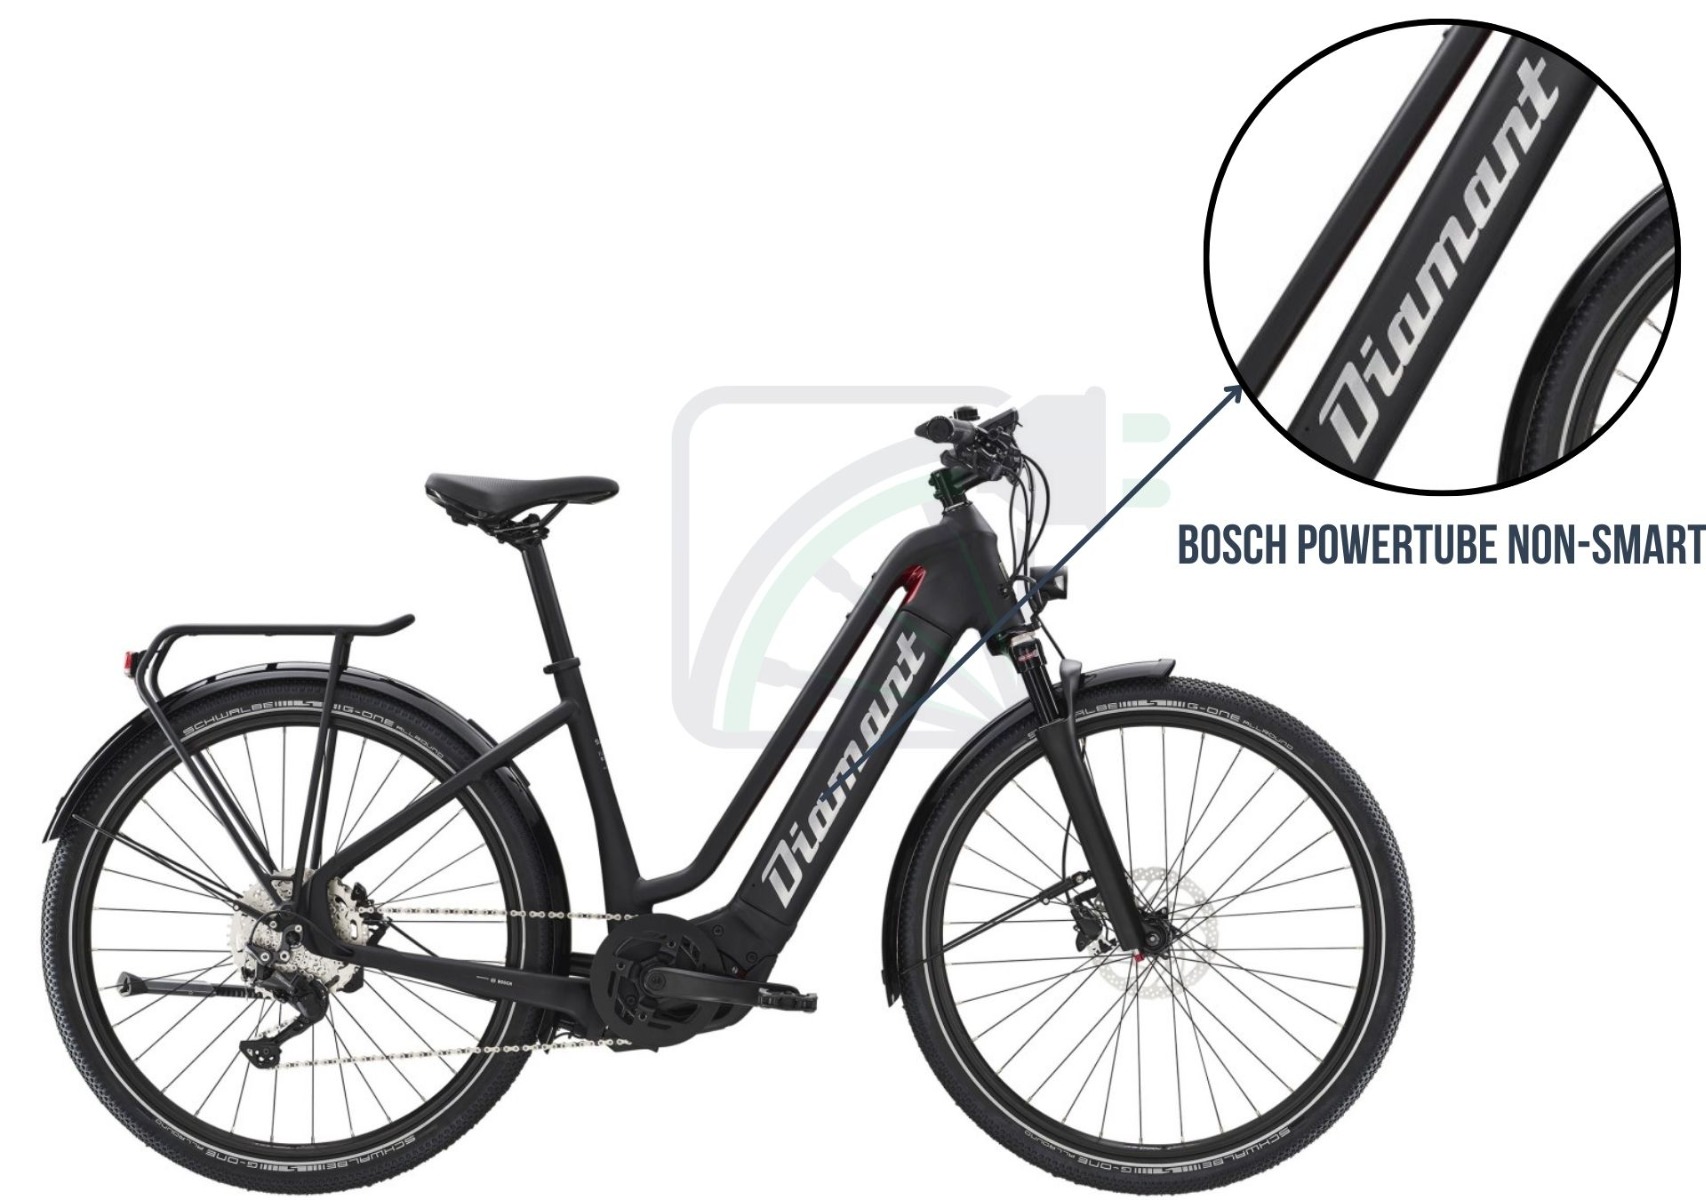 Afbeelding van een elektrische fiets met daarbij uitgelicht welke fietsaccu er in deze fiets zit. Dit is in dit geval de Bosch Powertube.